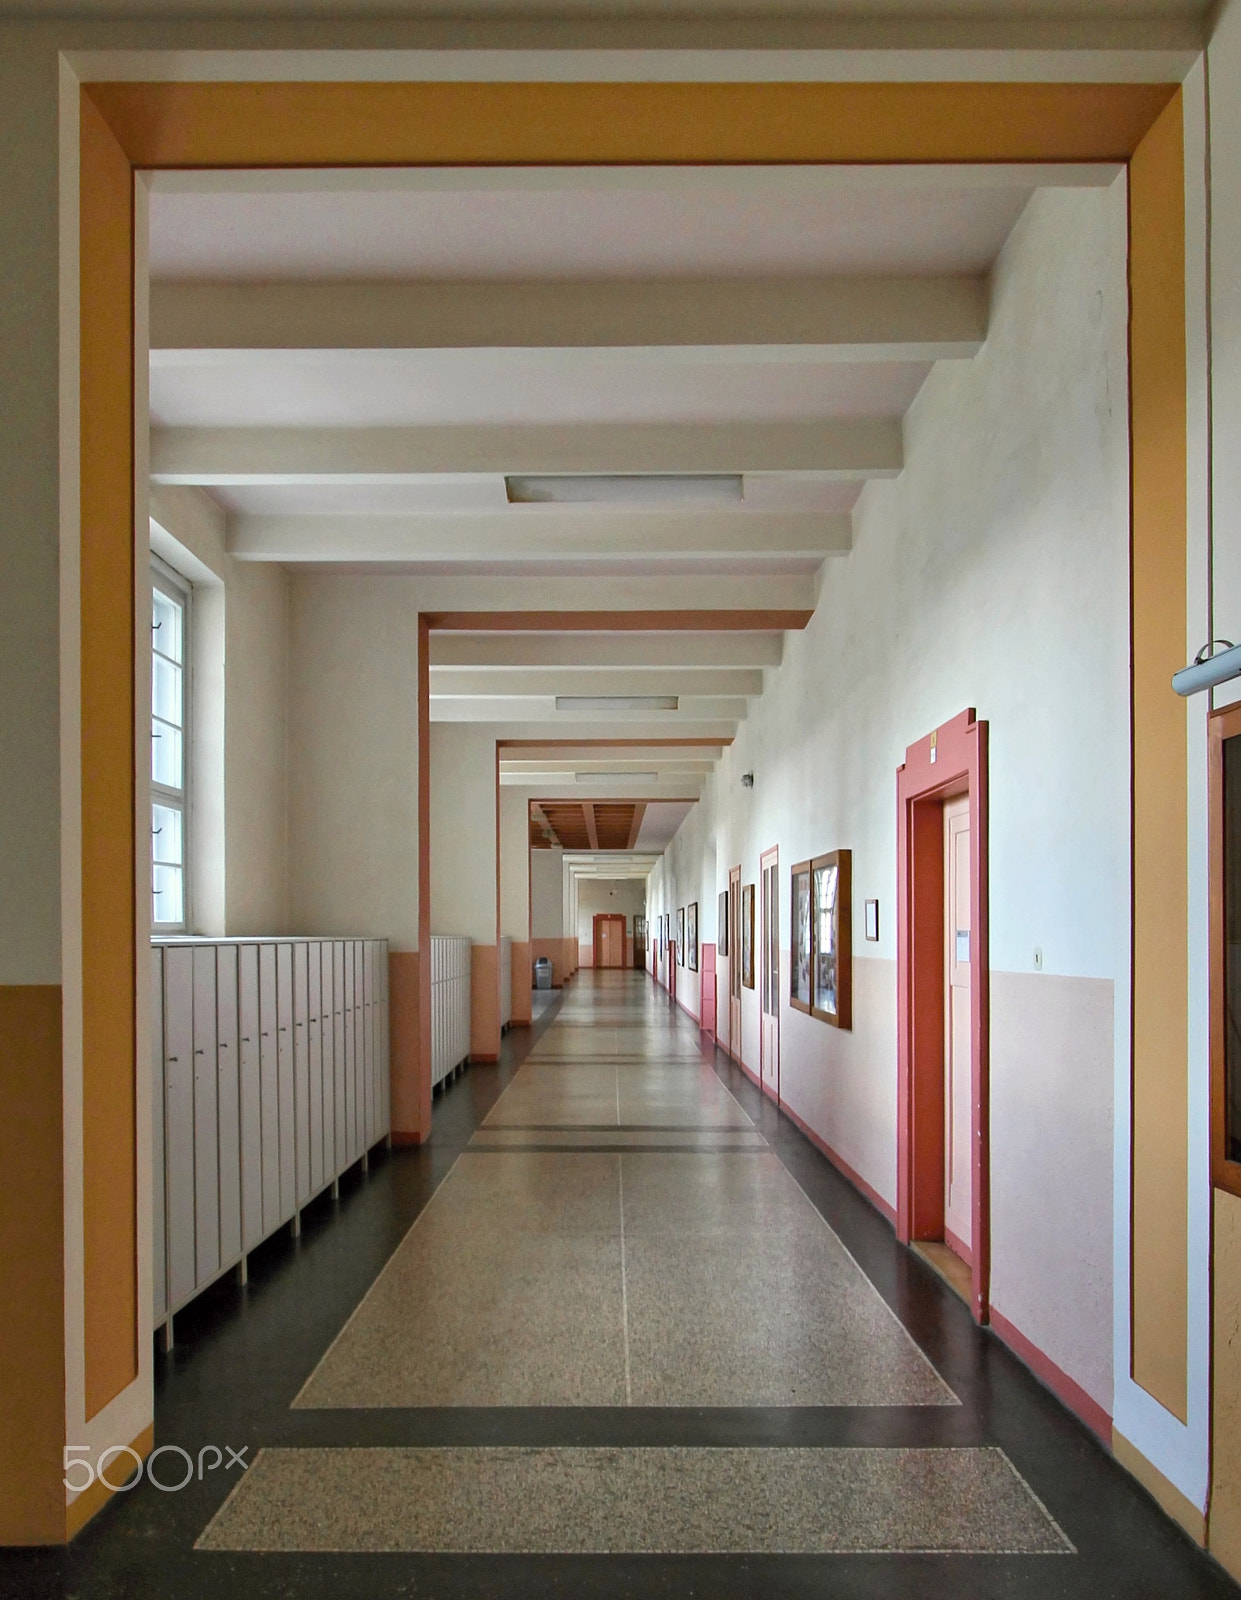 Canon EOS 60D sample photo. Empty school corridor photography